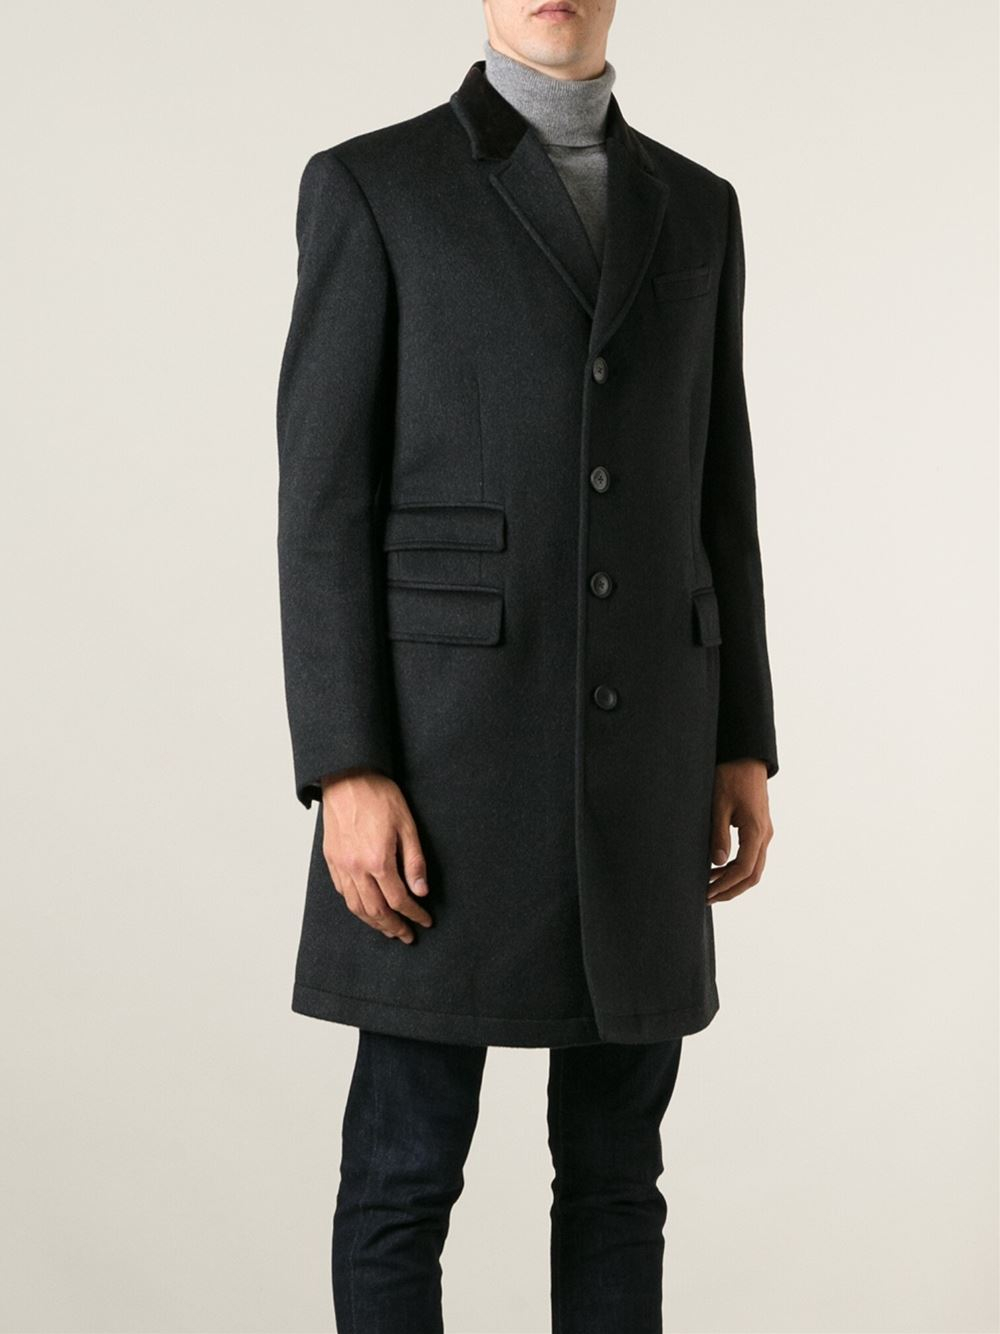 Paul Smith Epsom Coat In Black For Men Lyst